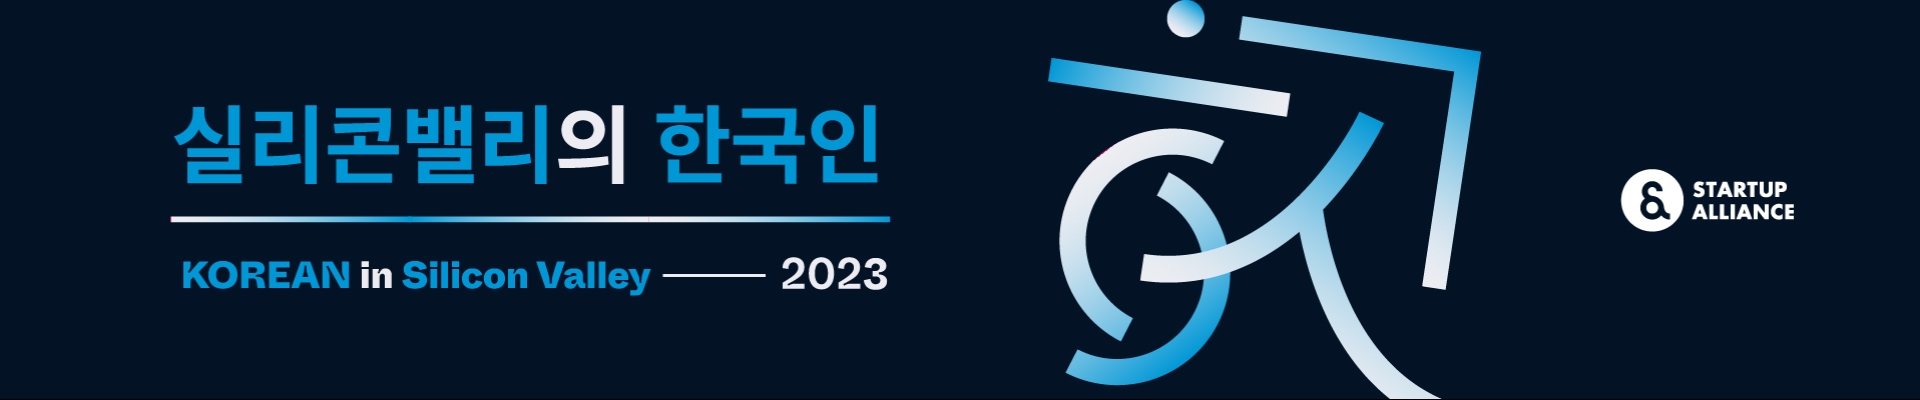 실리콘밸리의 한국인 2023